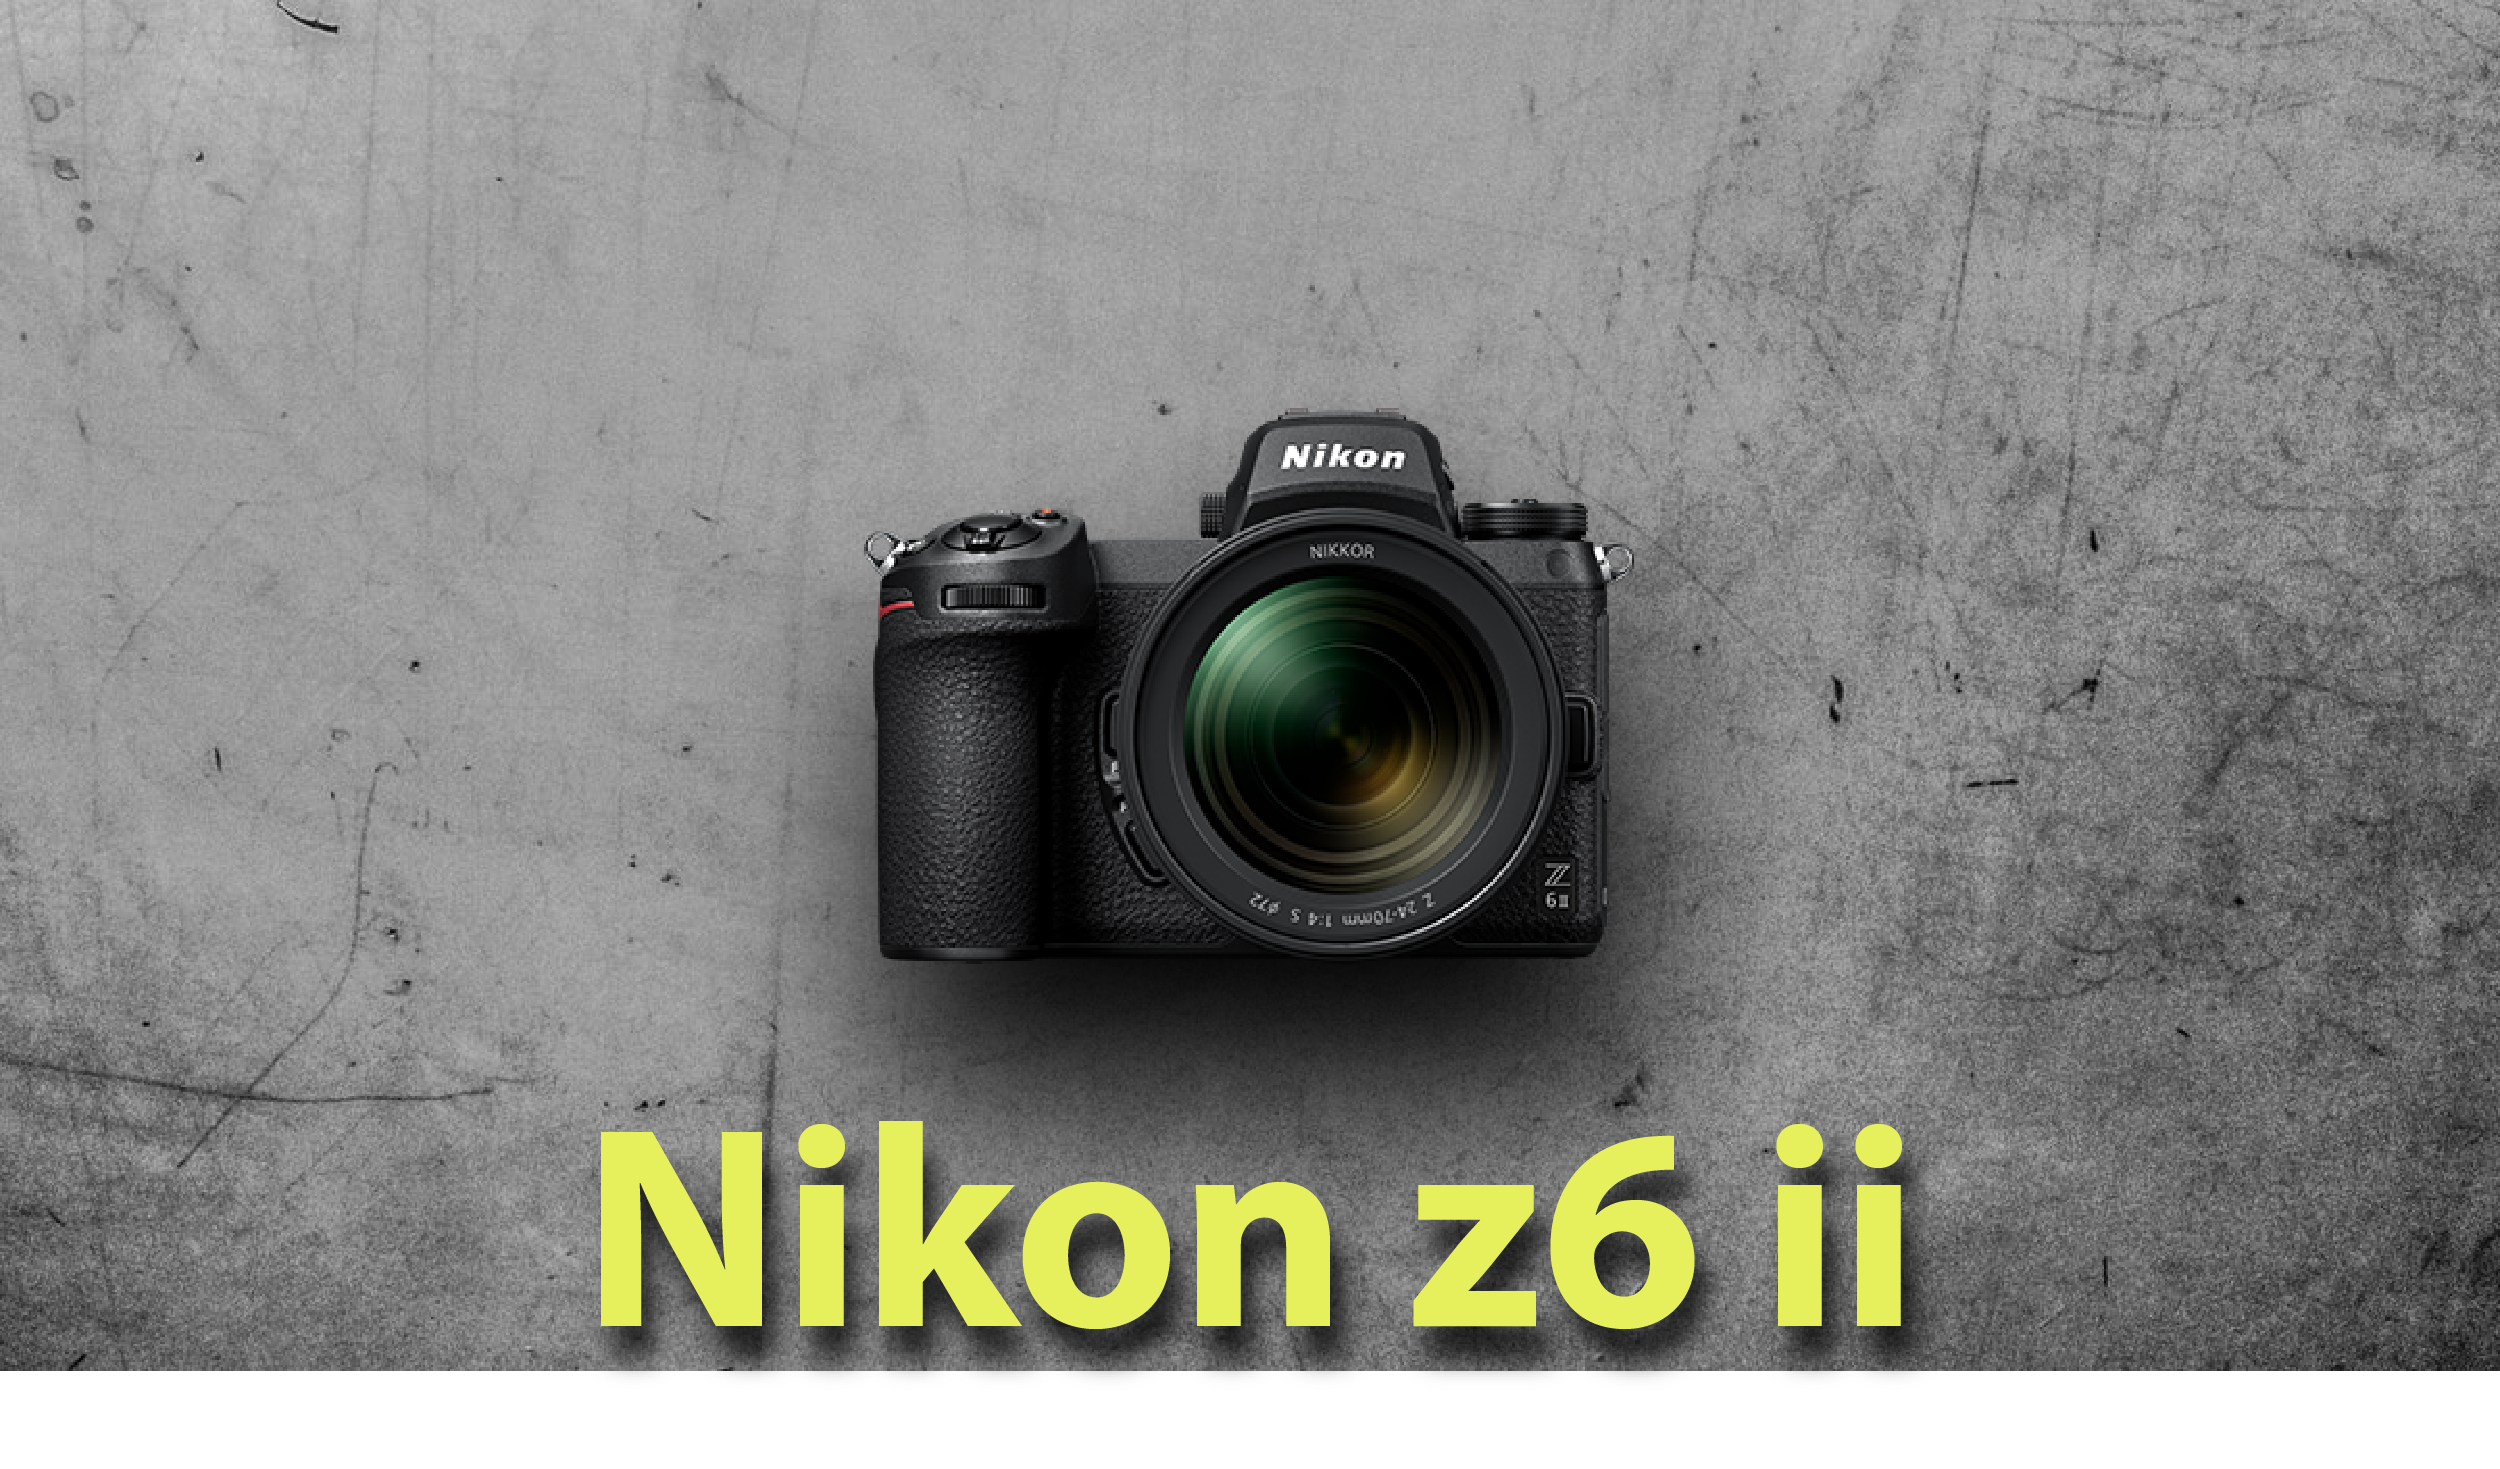 Nikon z6 mark ii price in India